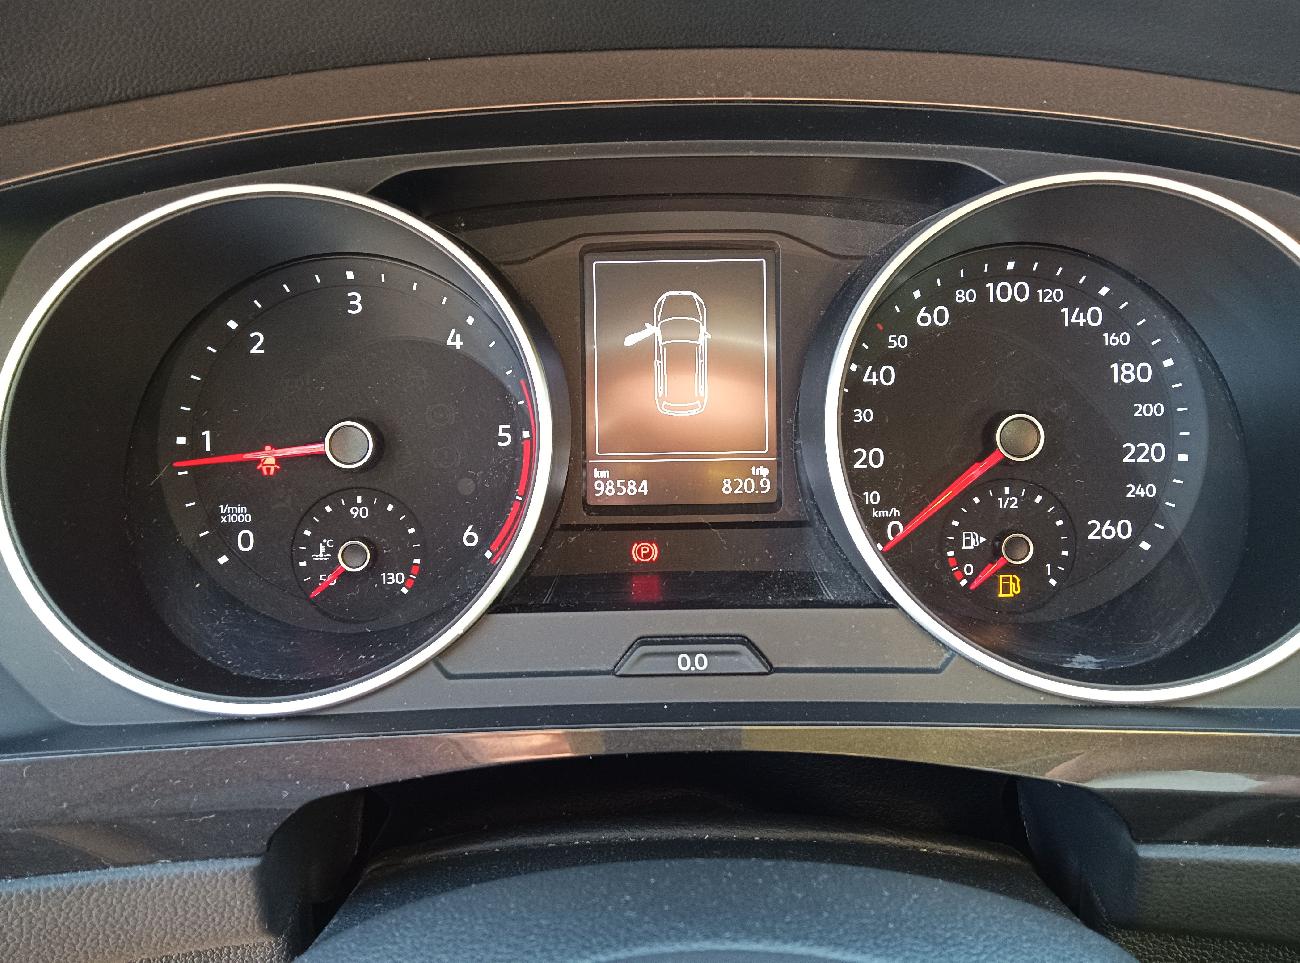 2019 Volkswagen Tiguan Tiguan Edition 1.6 TDI 85kW (115CV) coche de segunda mano